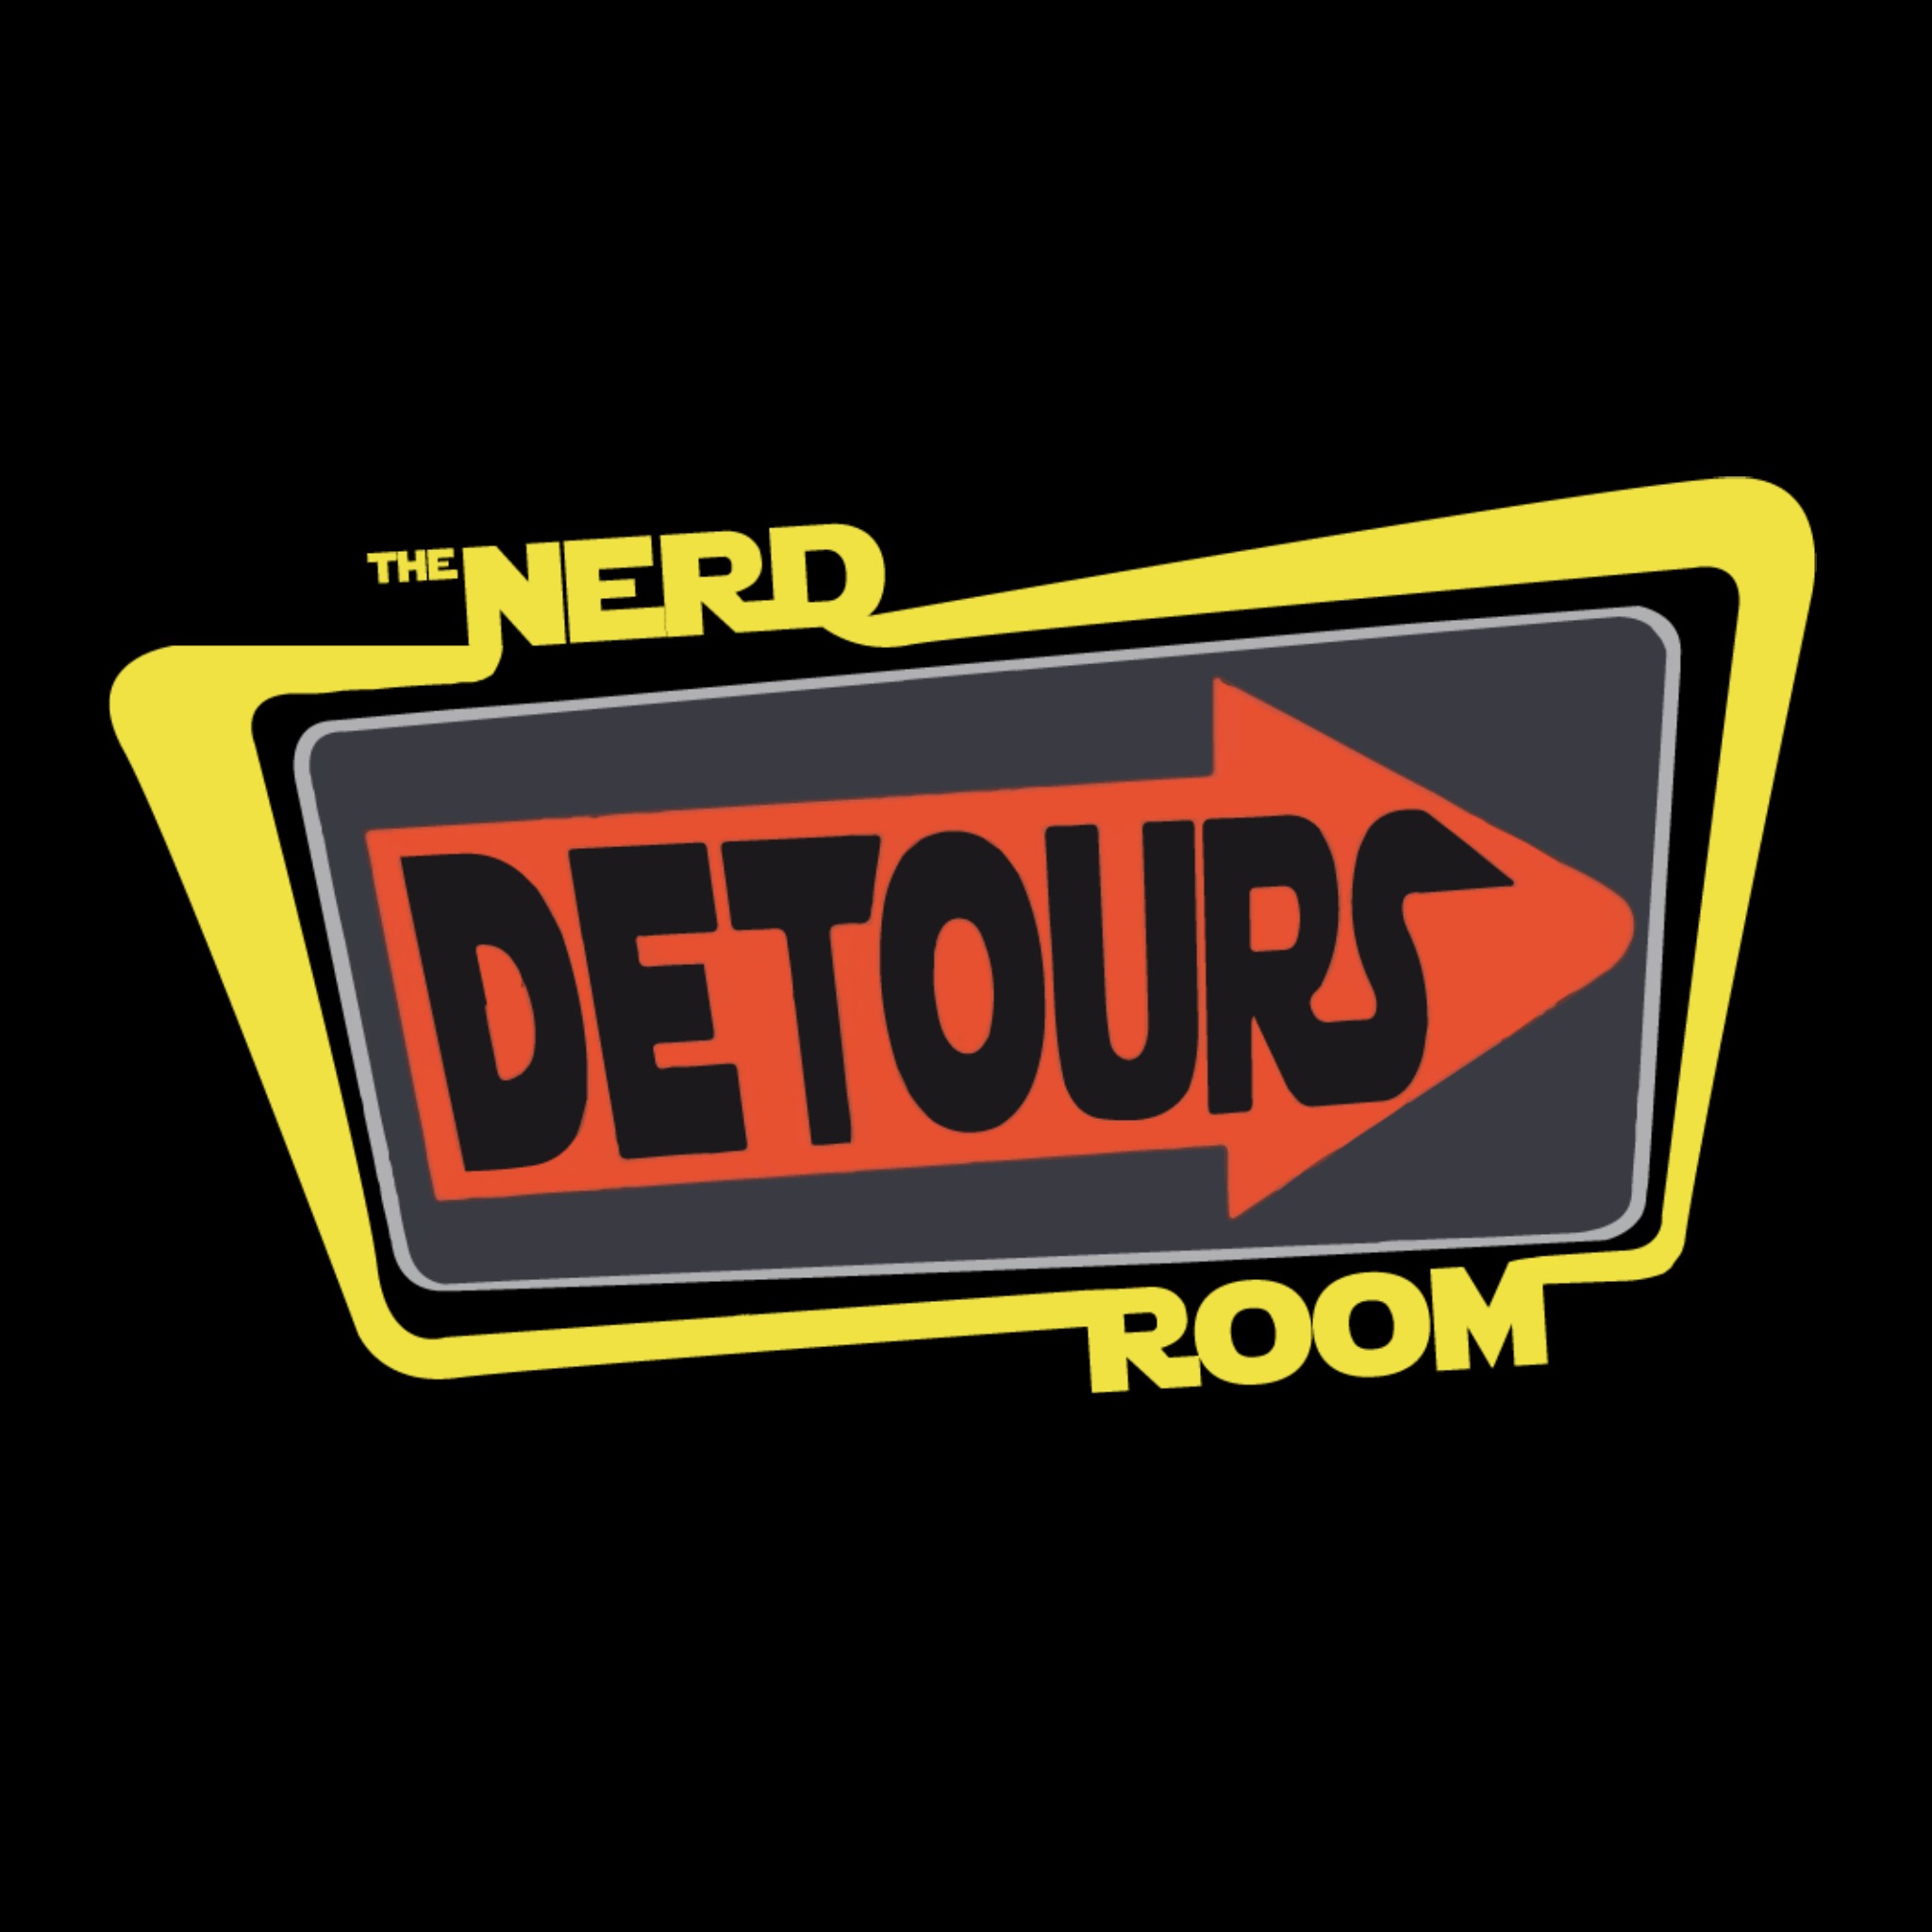 The Nerd Room: Detours #1